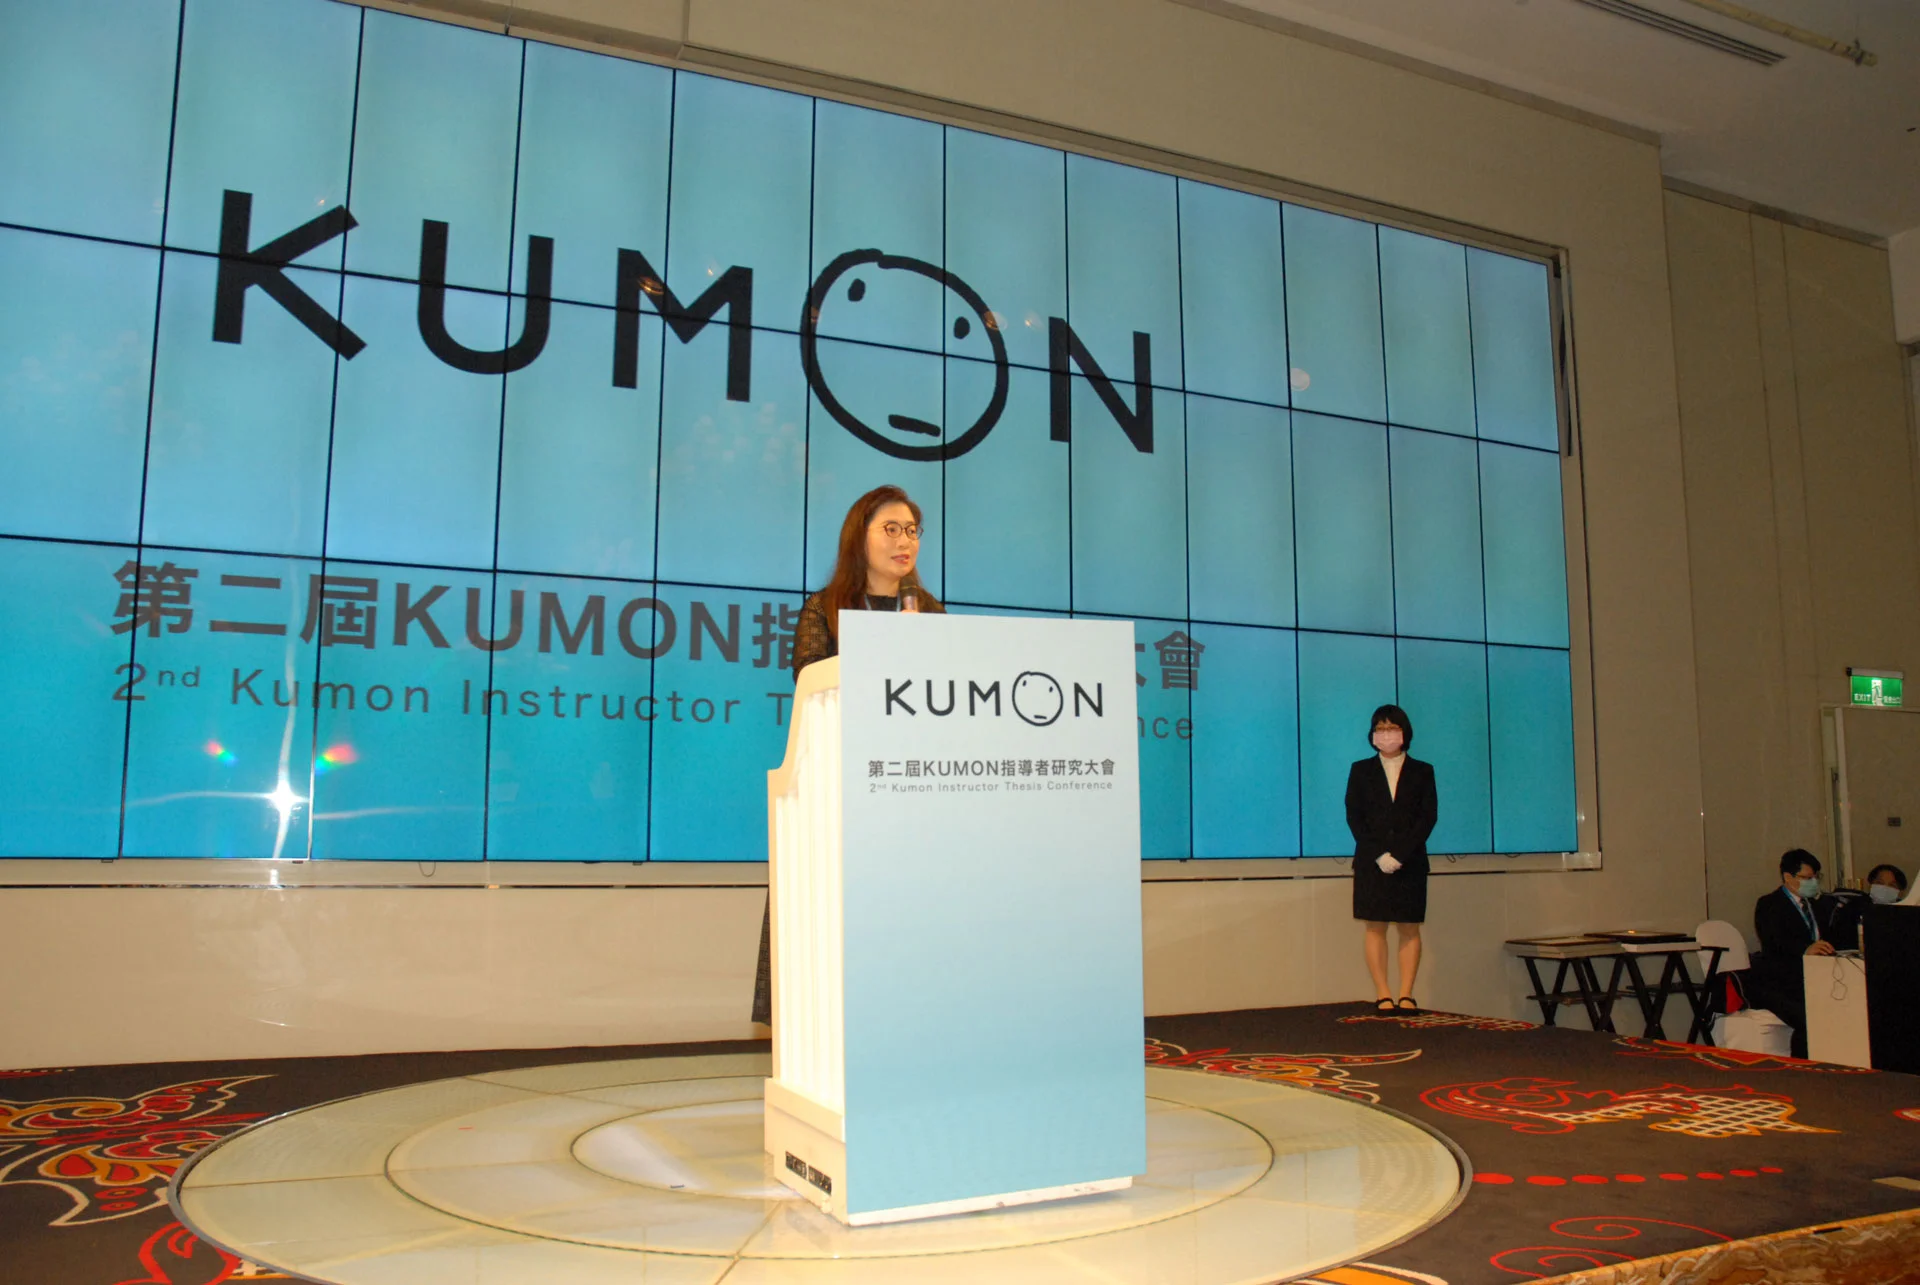 第二屆KUMON指導者研究大會， 追求卓越、共享榮耀